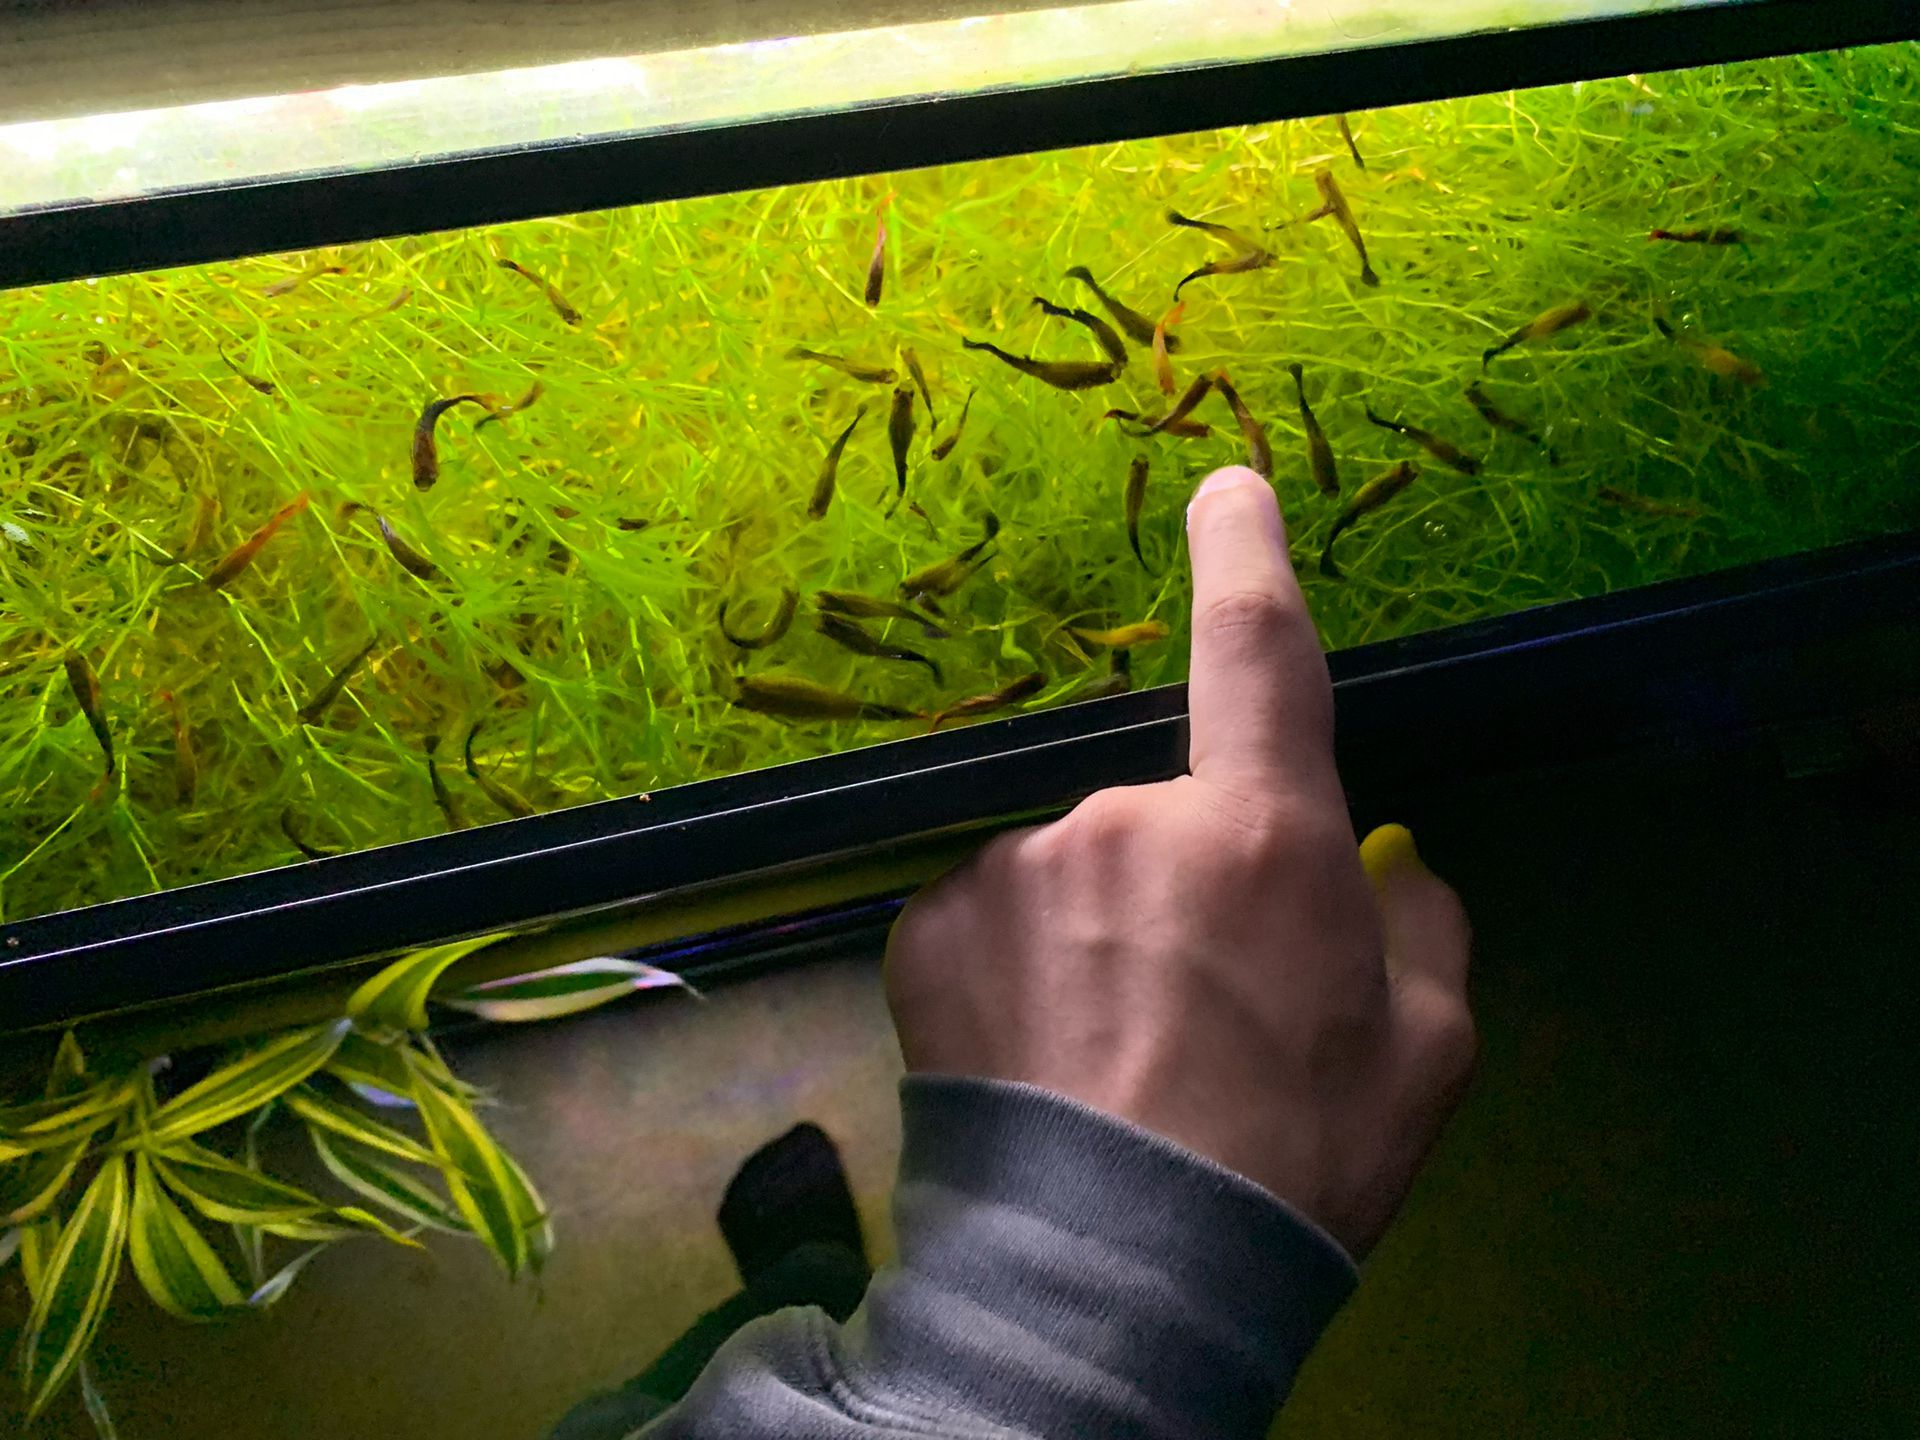 Aquarium Grass for sale